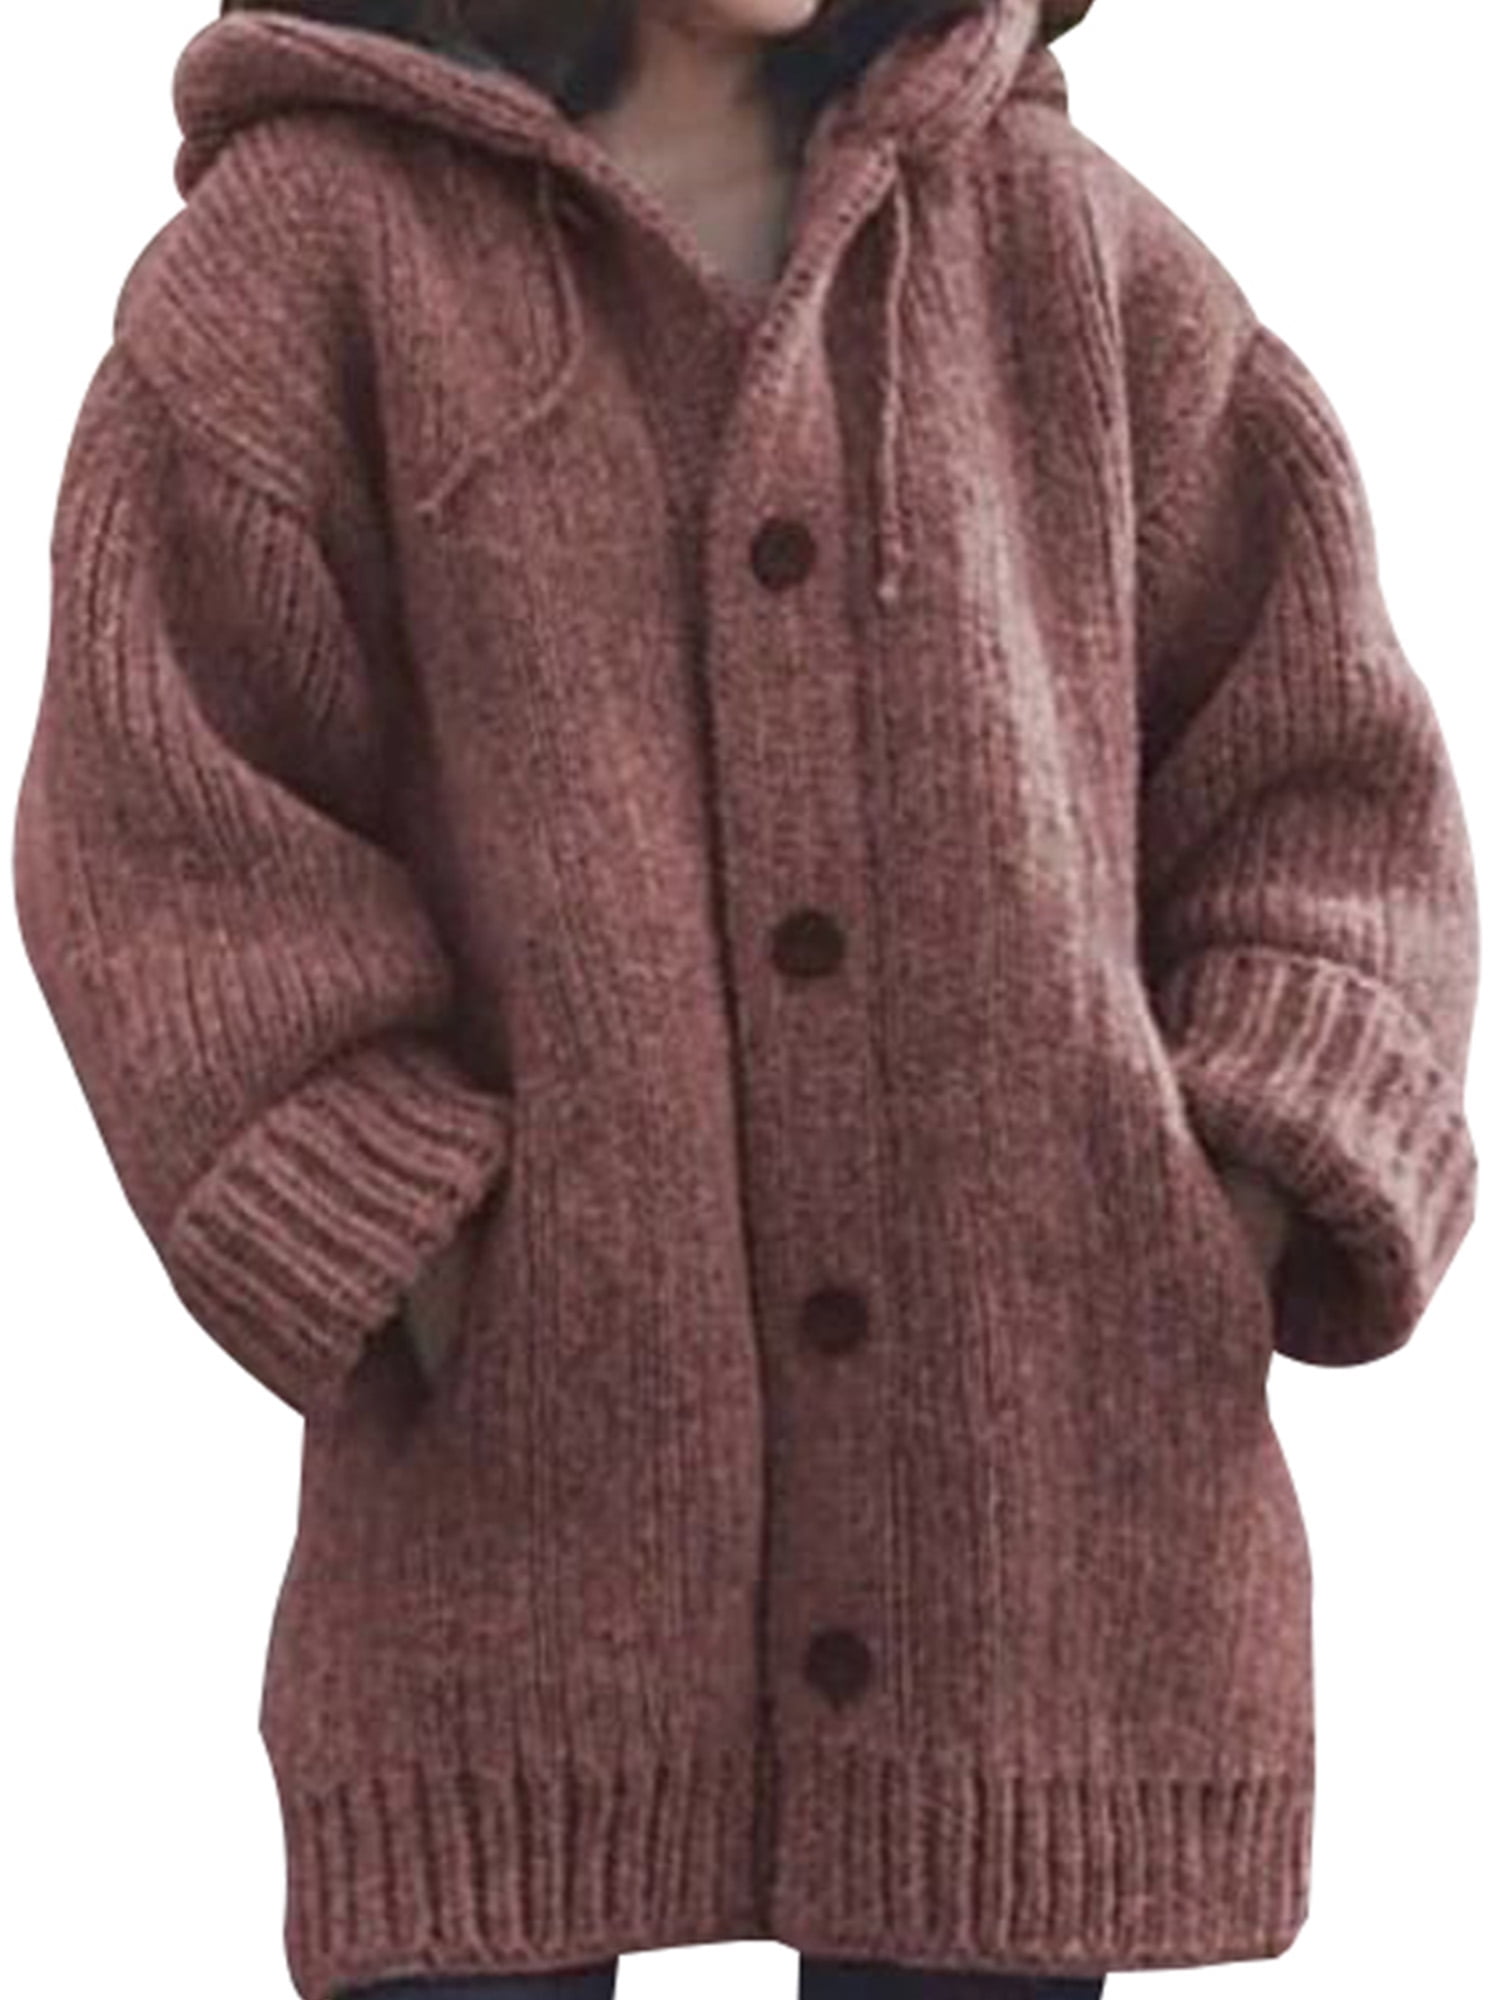 Jushye Womens Cardigan Coat,Casual Long Sleeve Open Front Woolen Sweater Jacket Outwear 